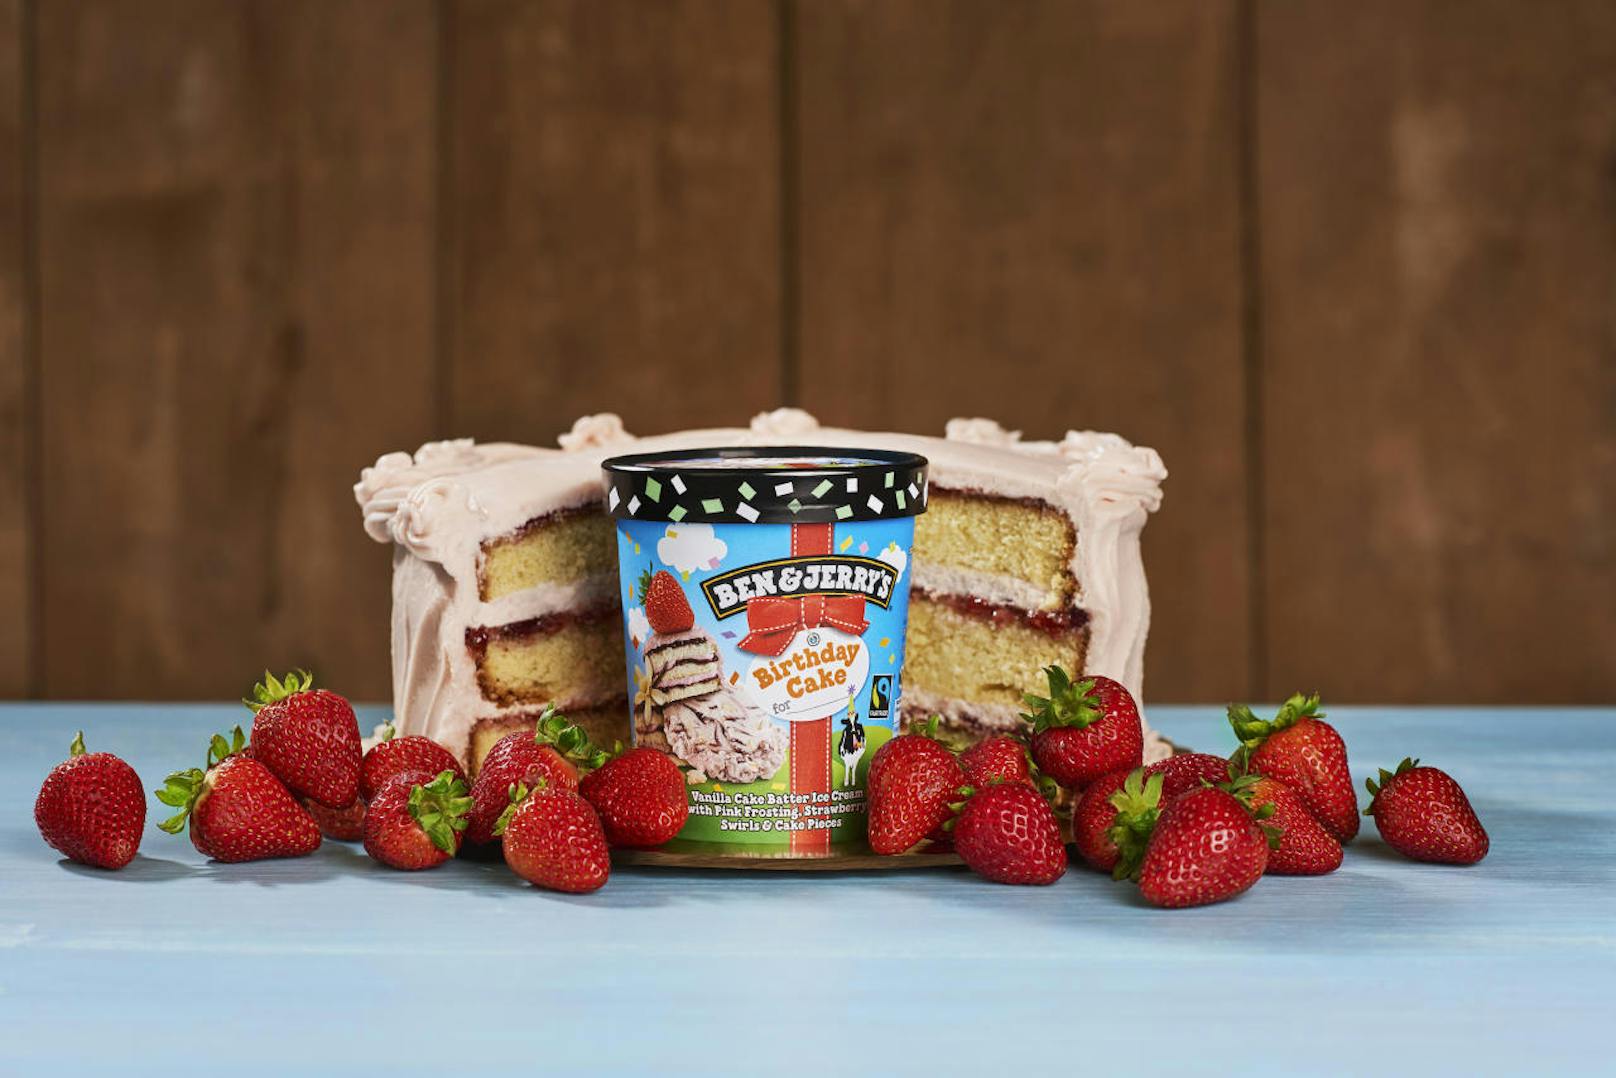 Vanille-Eiscreme mit Kuchenteig, durchzogen von einem pinken Frostingswirl, einem Erdbeerswirl und Kuchenstückchen ? das steckt im "Birthday Cake".